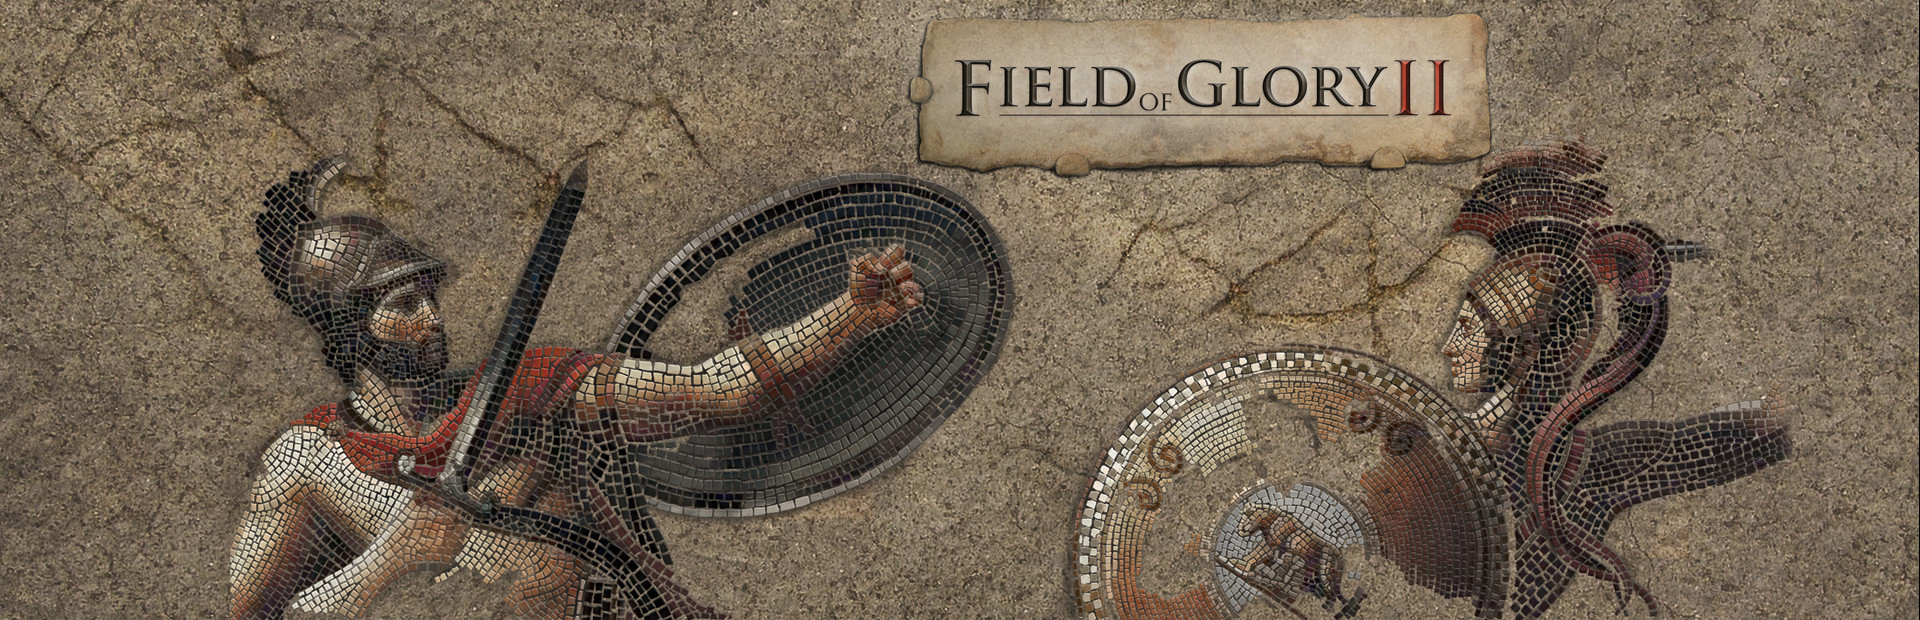 دانلود بازی Field of Glory II برای کامپیوتر | گیمباتو